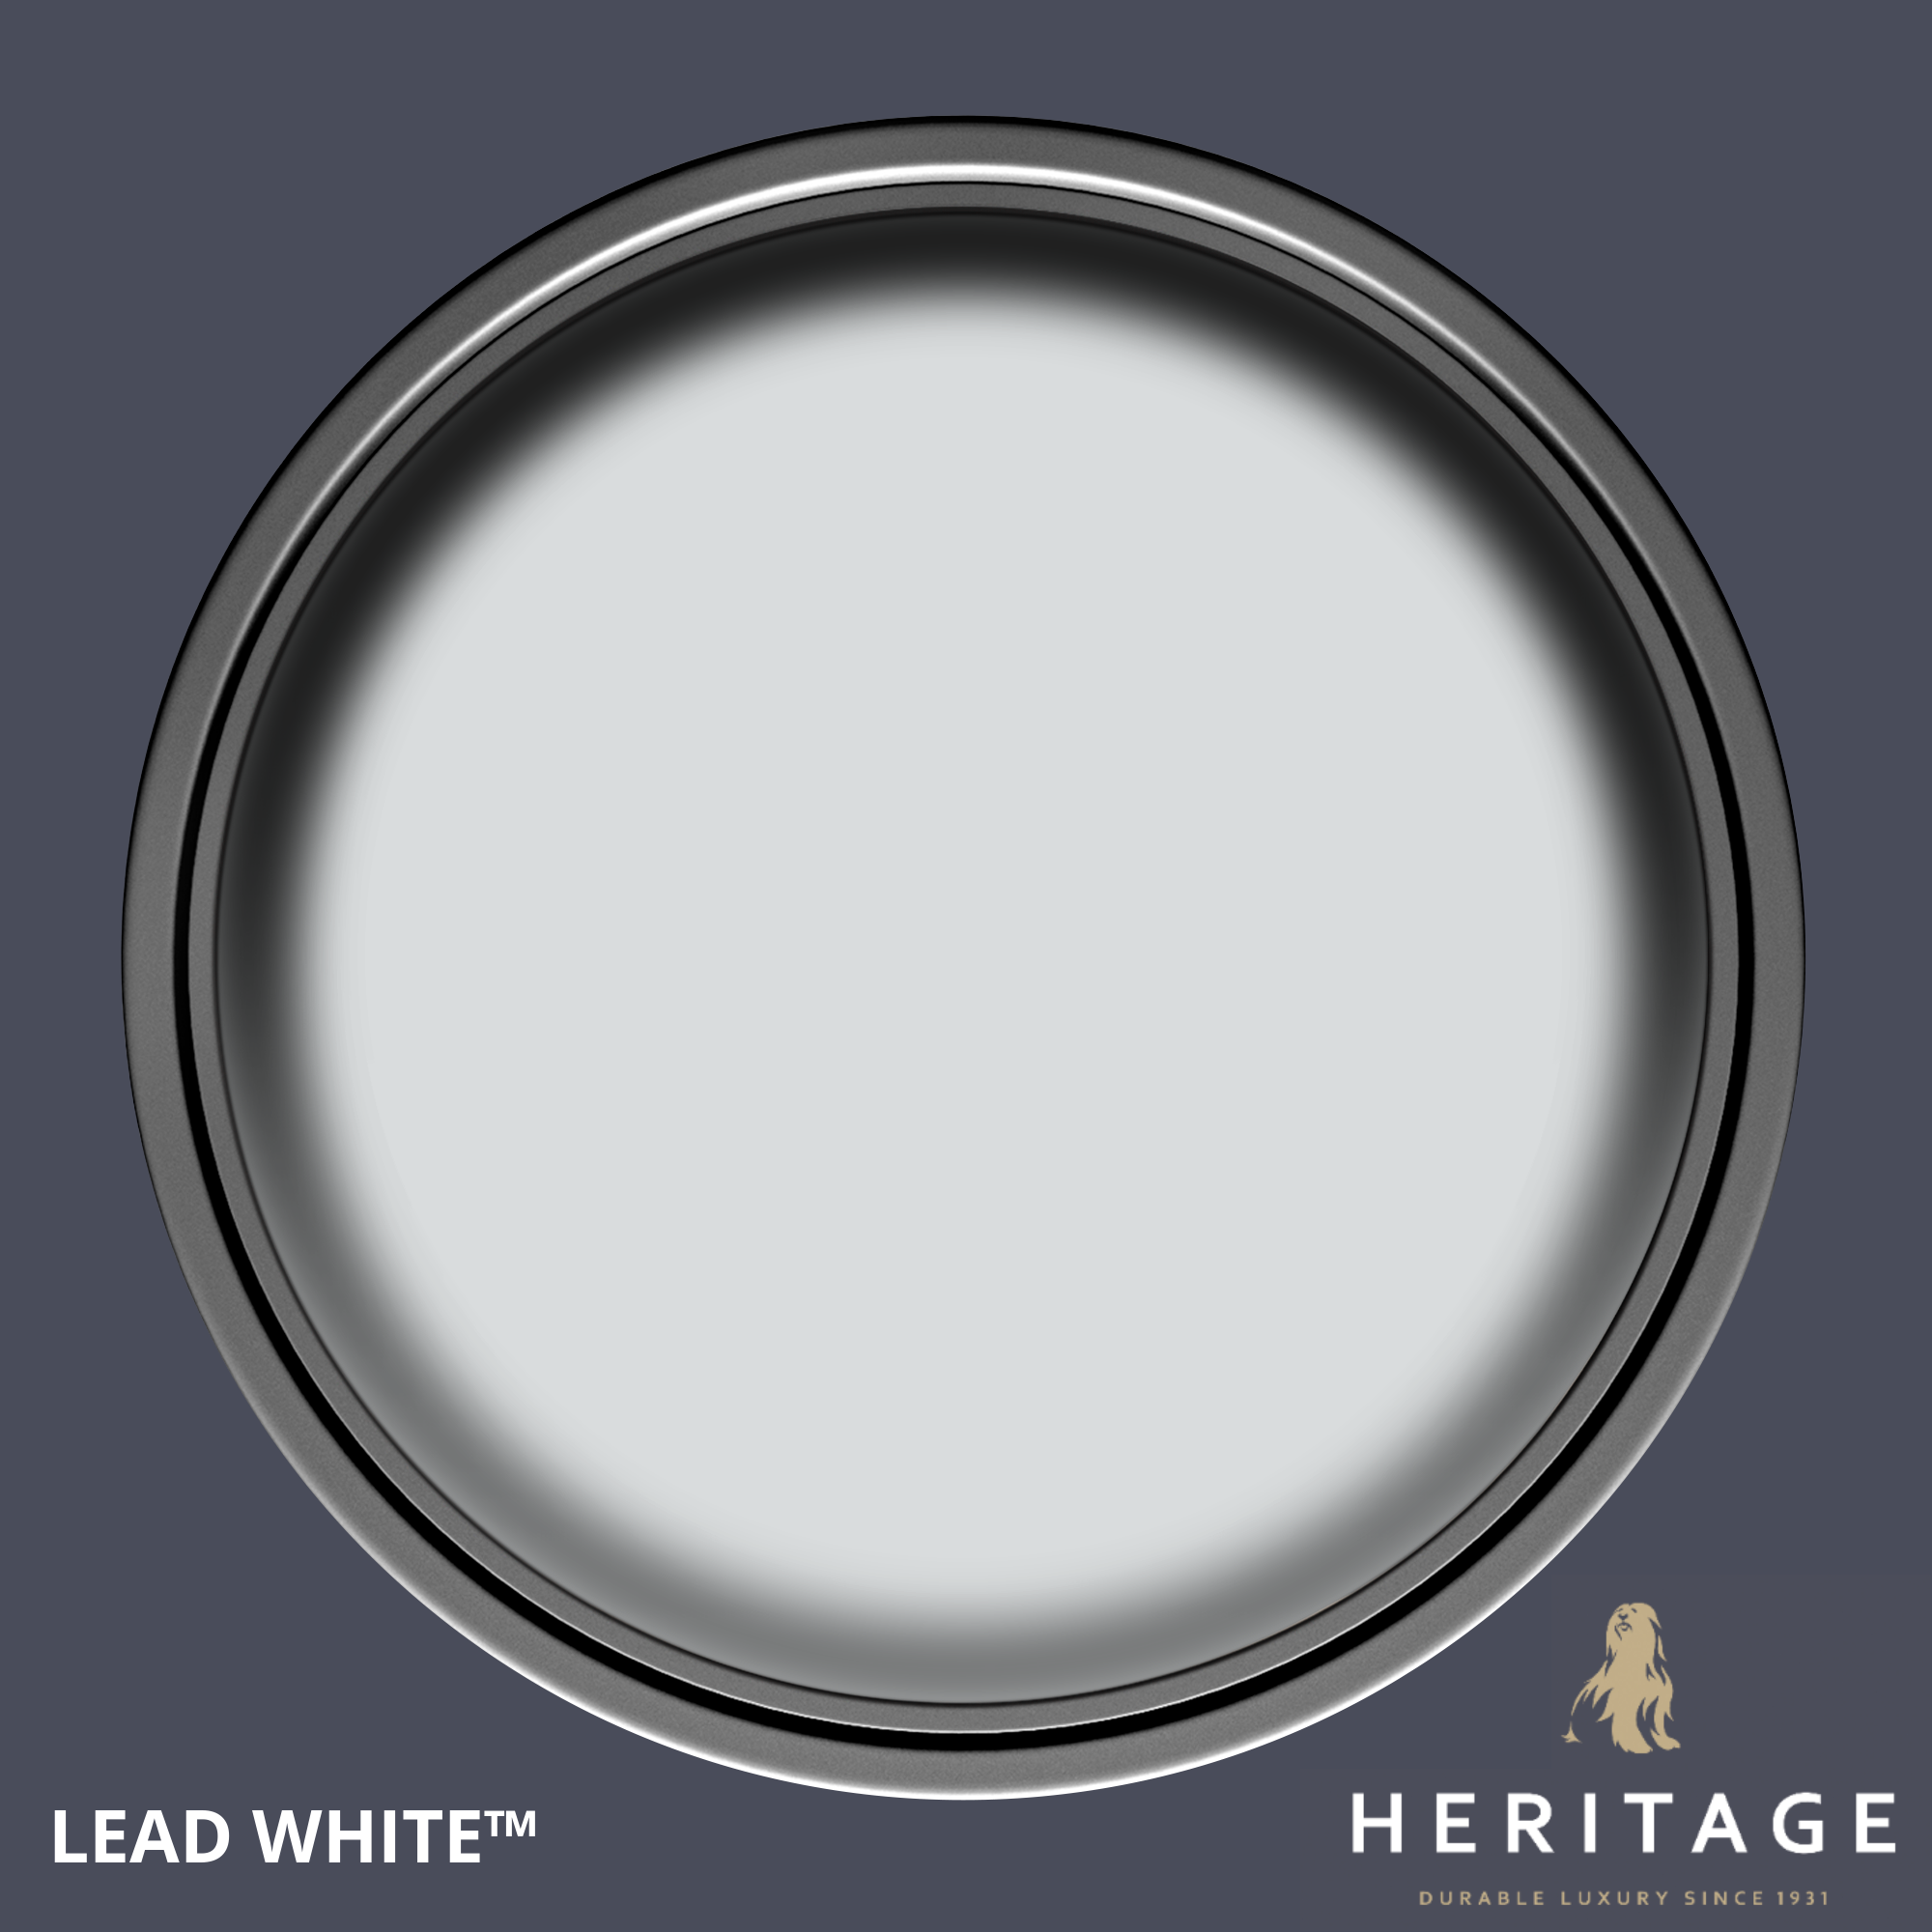 Dulux Heritage Velvet Matt Lead White 2.5L